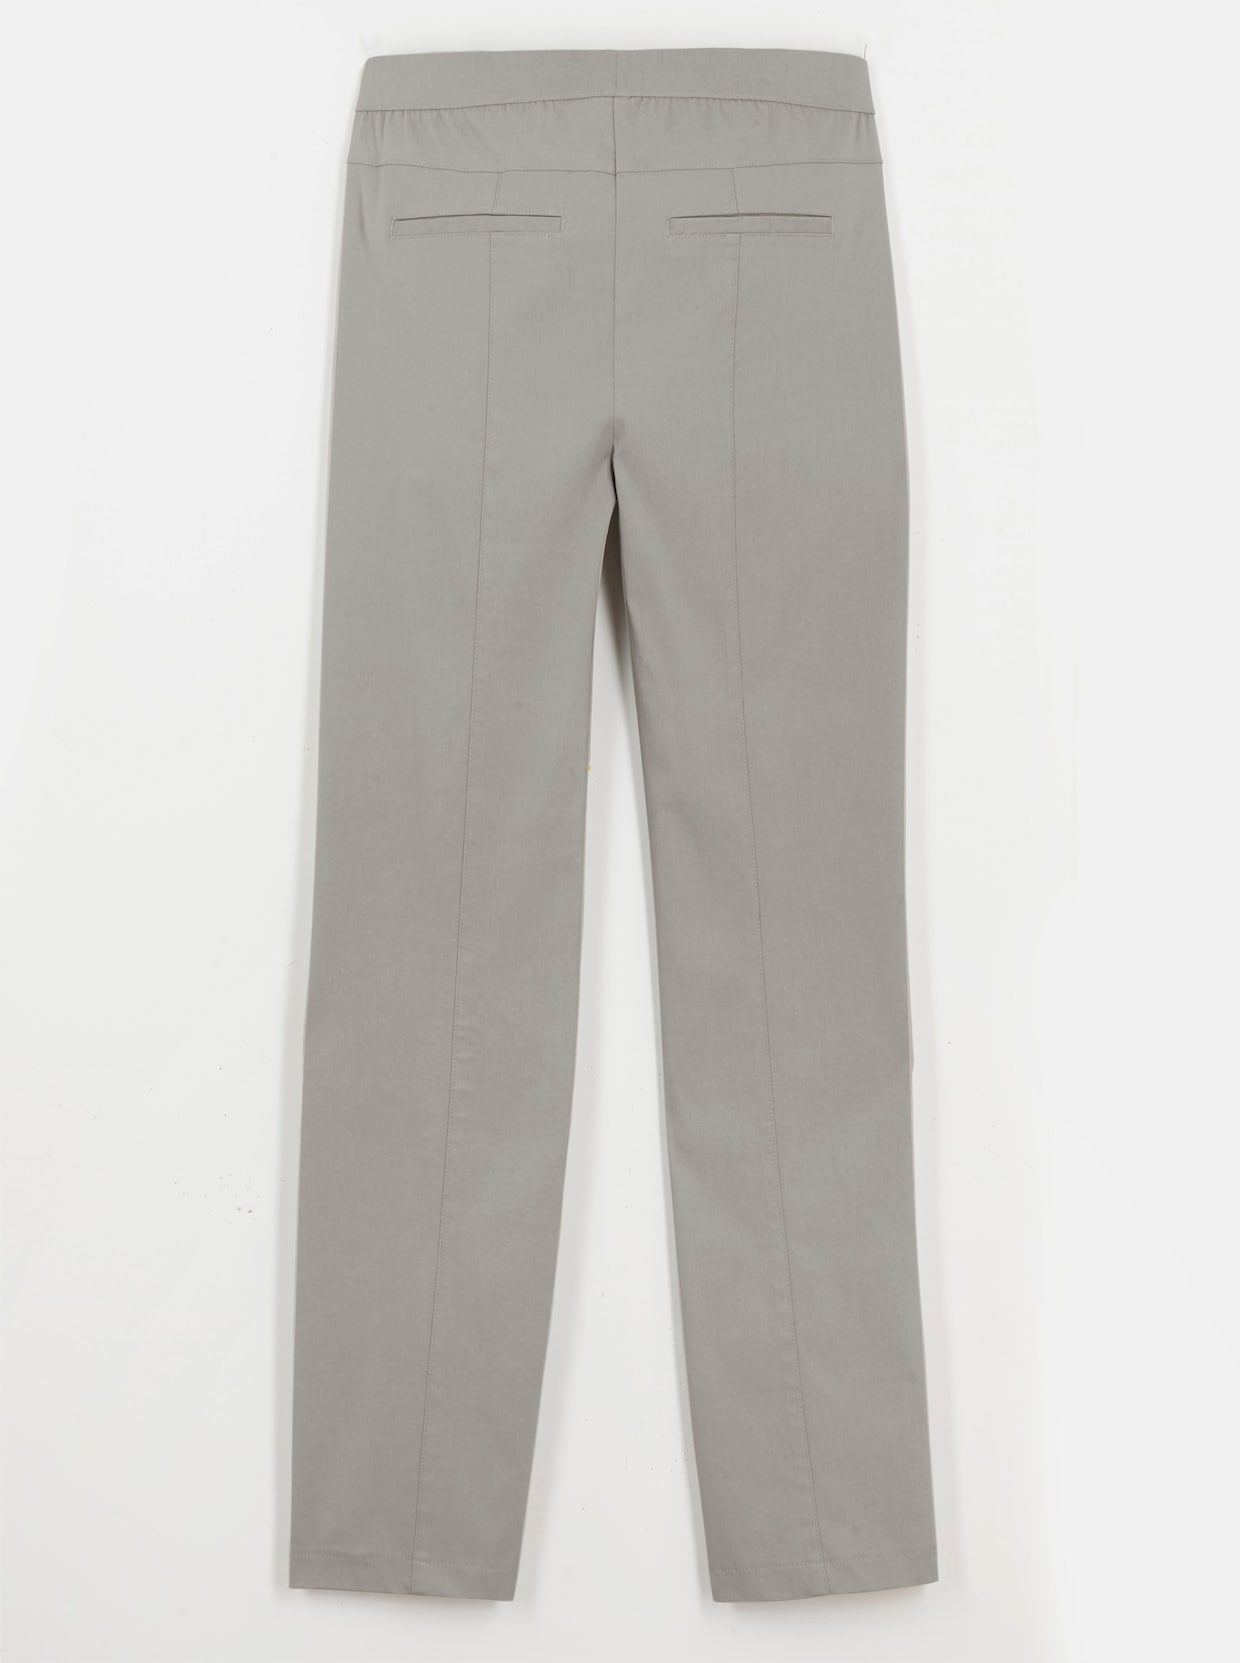 Bengalínové kalhoty - kamenná šedá